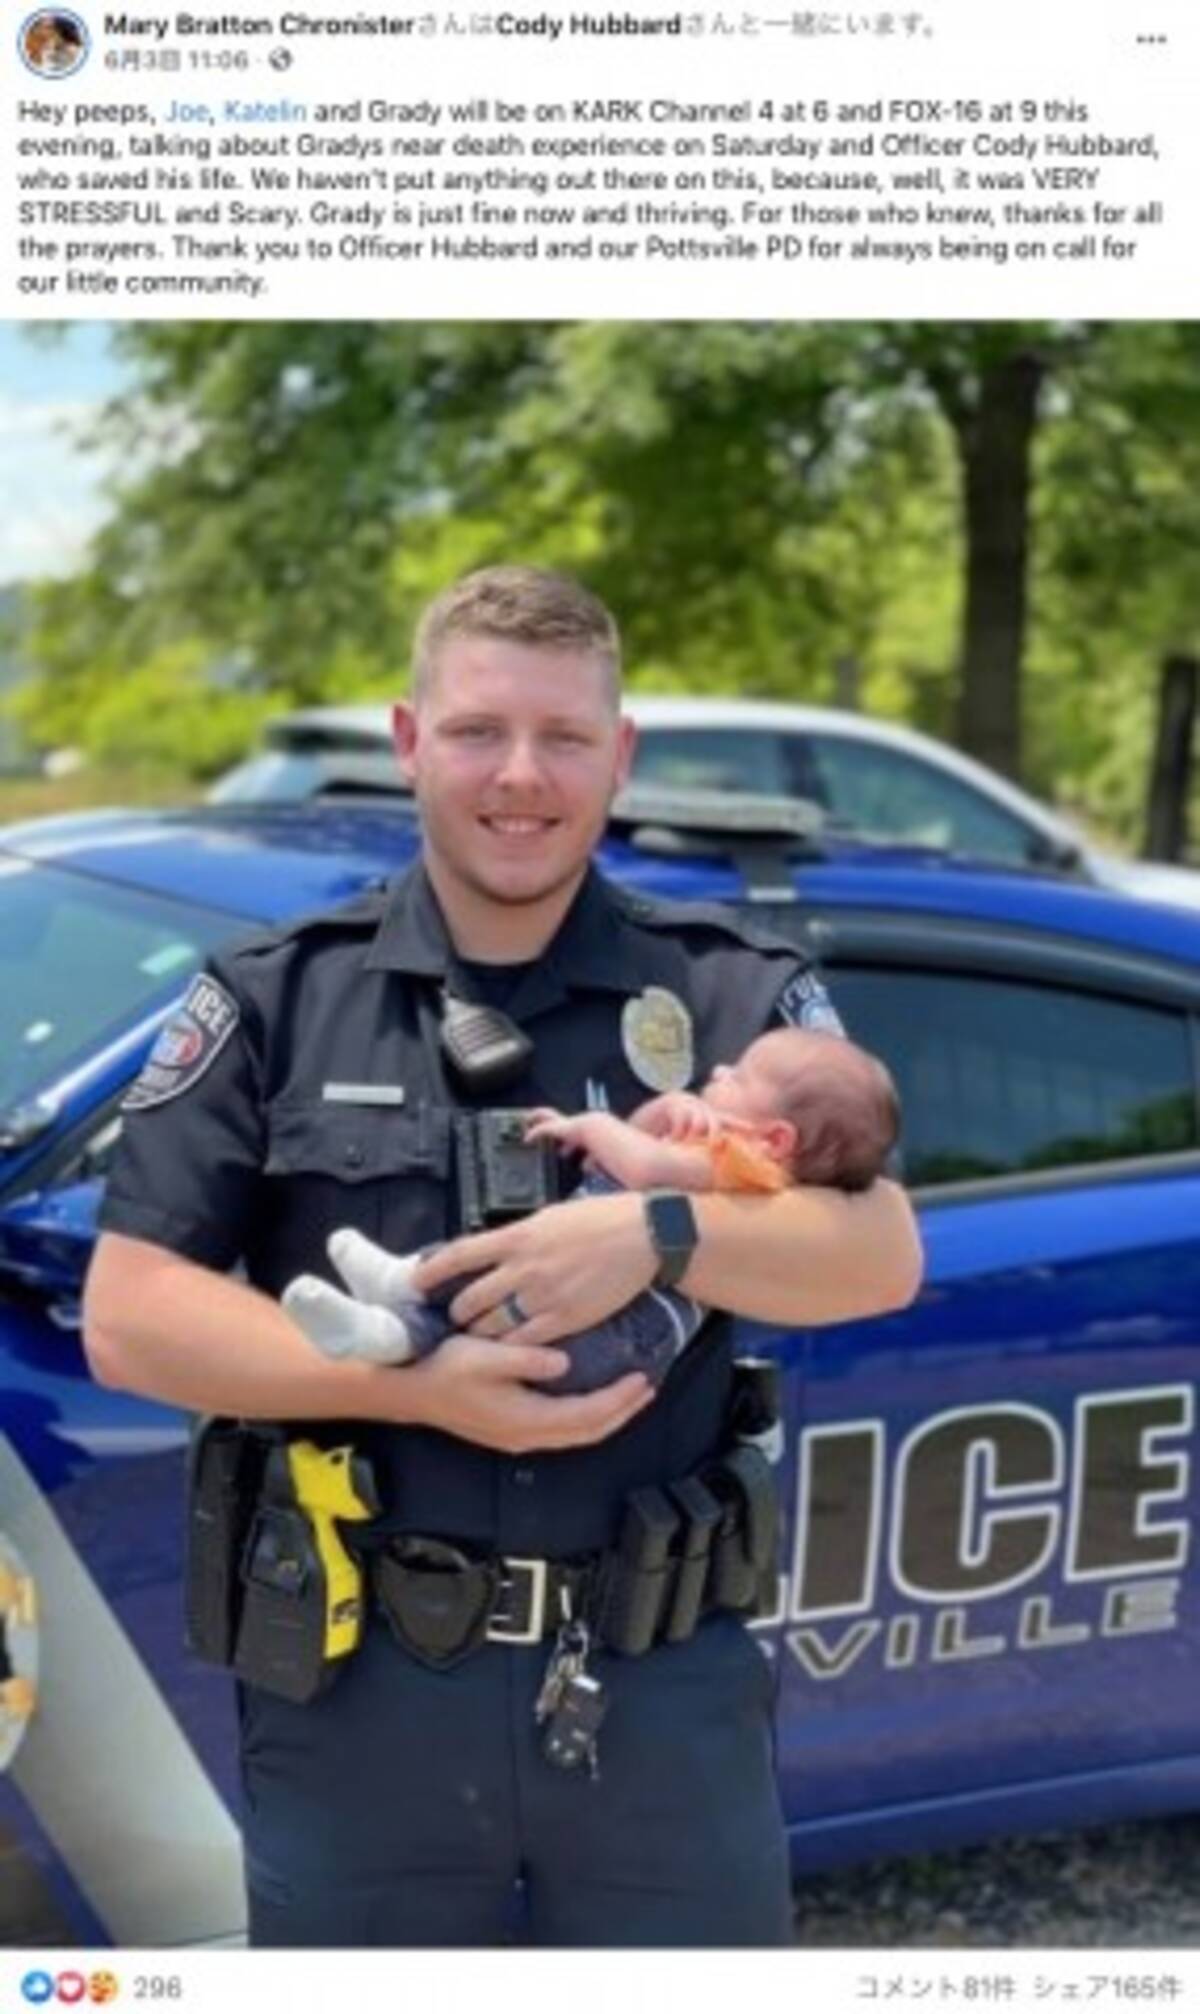 窒息寸前の乳児を救った新人警察官 パトカーに戻りひとり感涙 米 動画あり 21年6月7日 エキサイトニュース